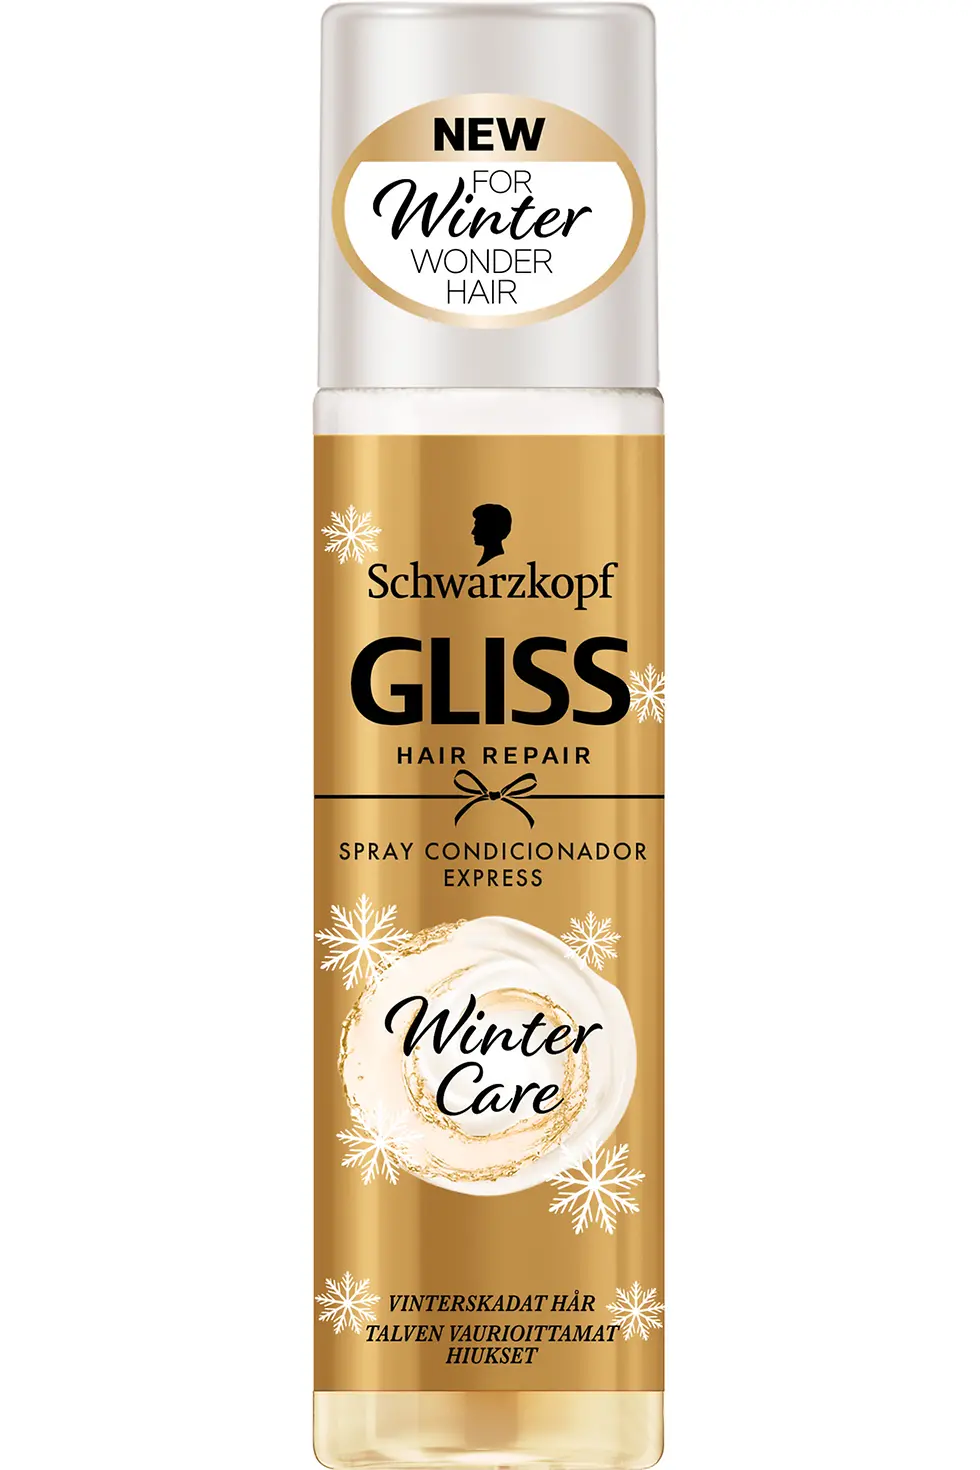 GLISS WINTER CARE Spray Condicionador, 200ml, 4.99€